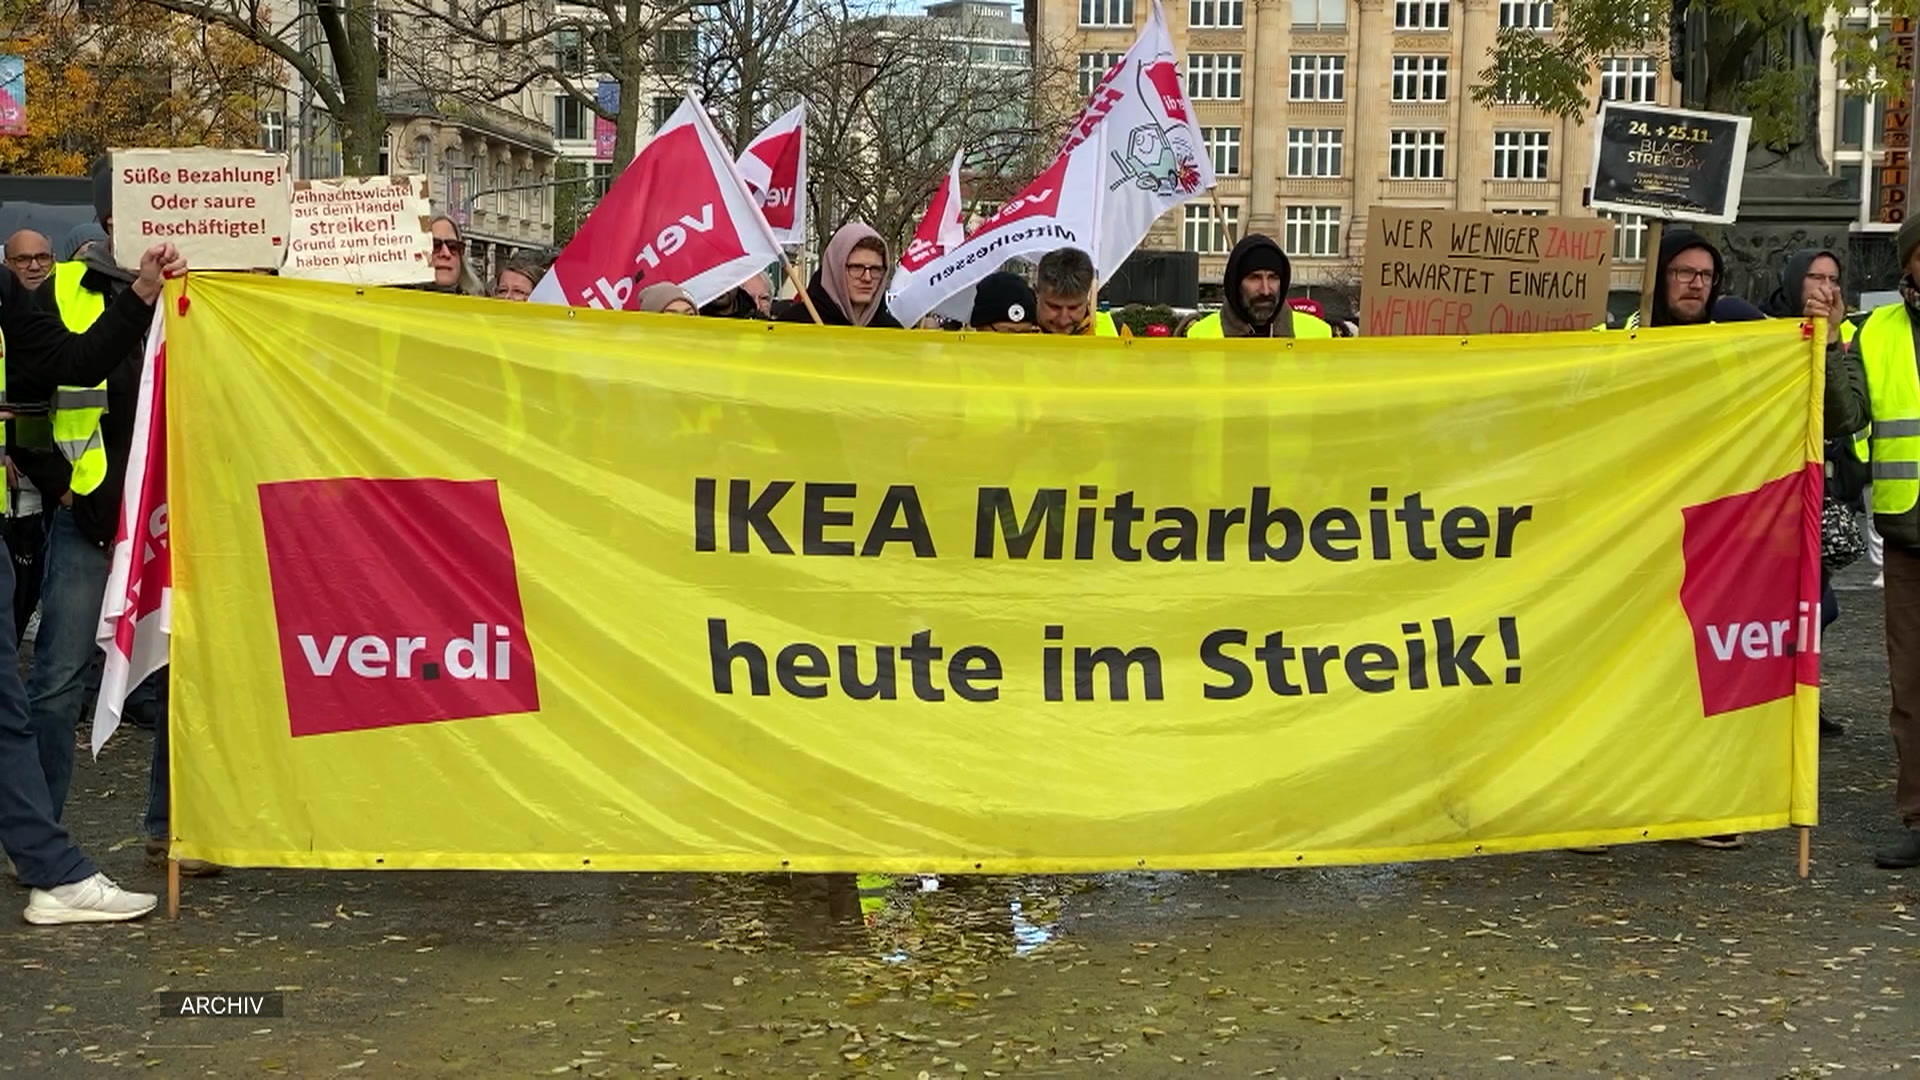 Strajk w IKEA Verdi jest poważny